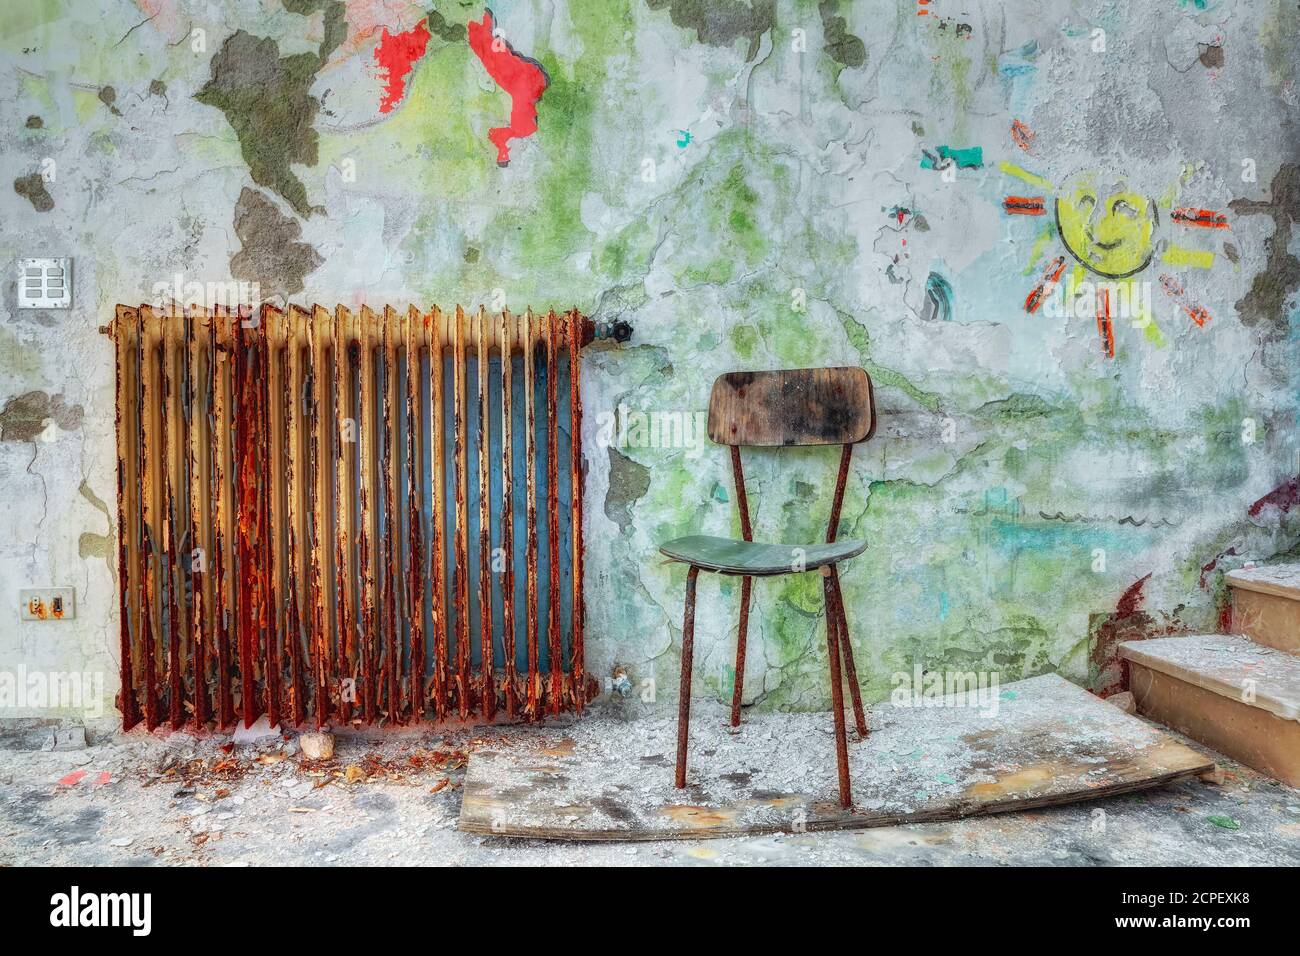 Ein kleiner Stuhl in einem alten verlassenen Gebäude, Schutt und Staub, alter rostiger Heizkörper und Kinderzeichnungen an der abblätternden Wand Stockfoto